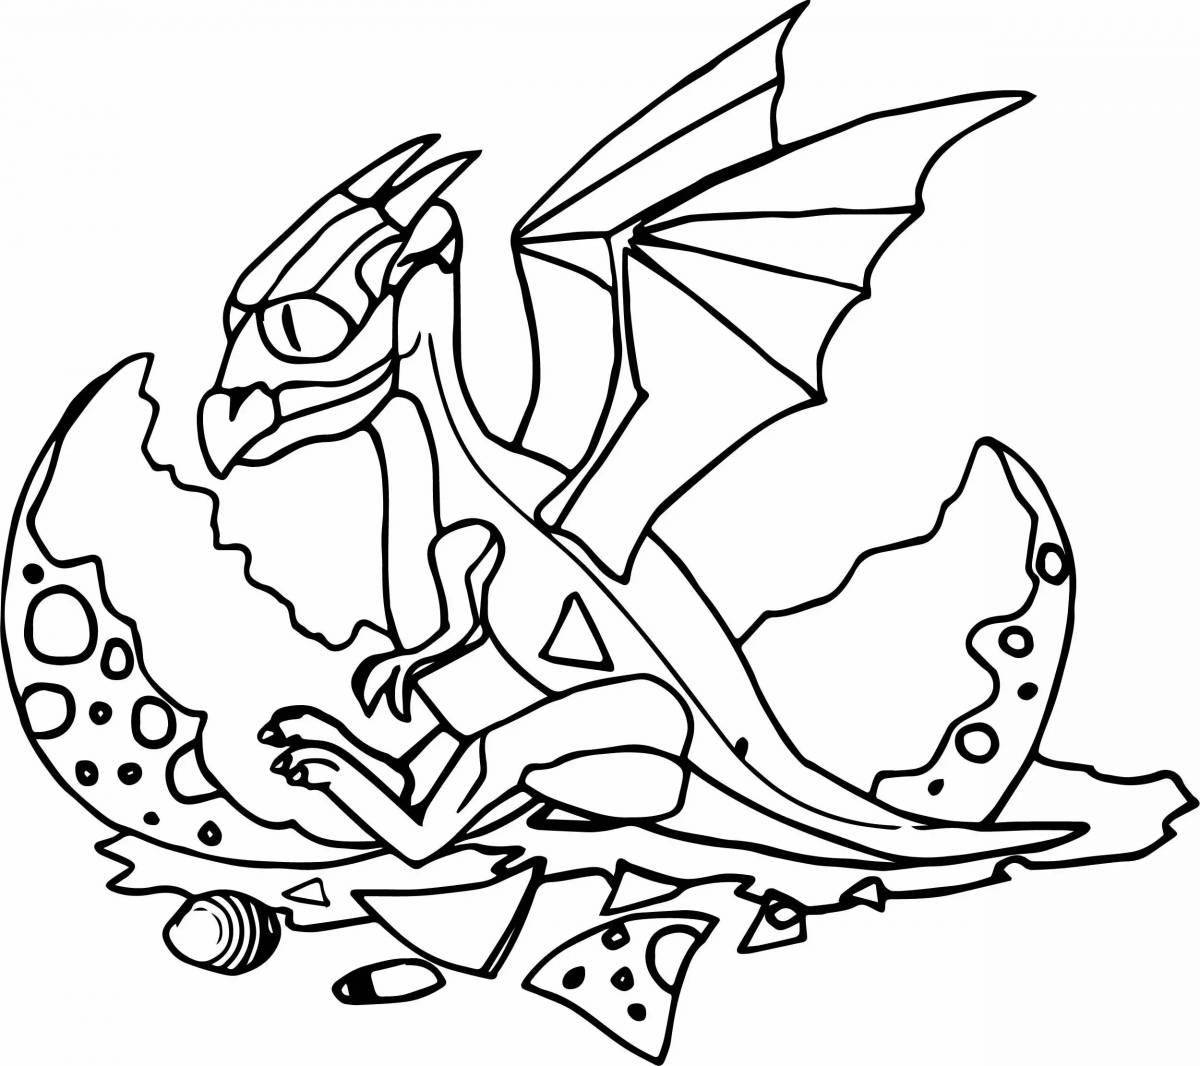 Royal magic dragon coloring page